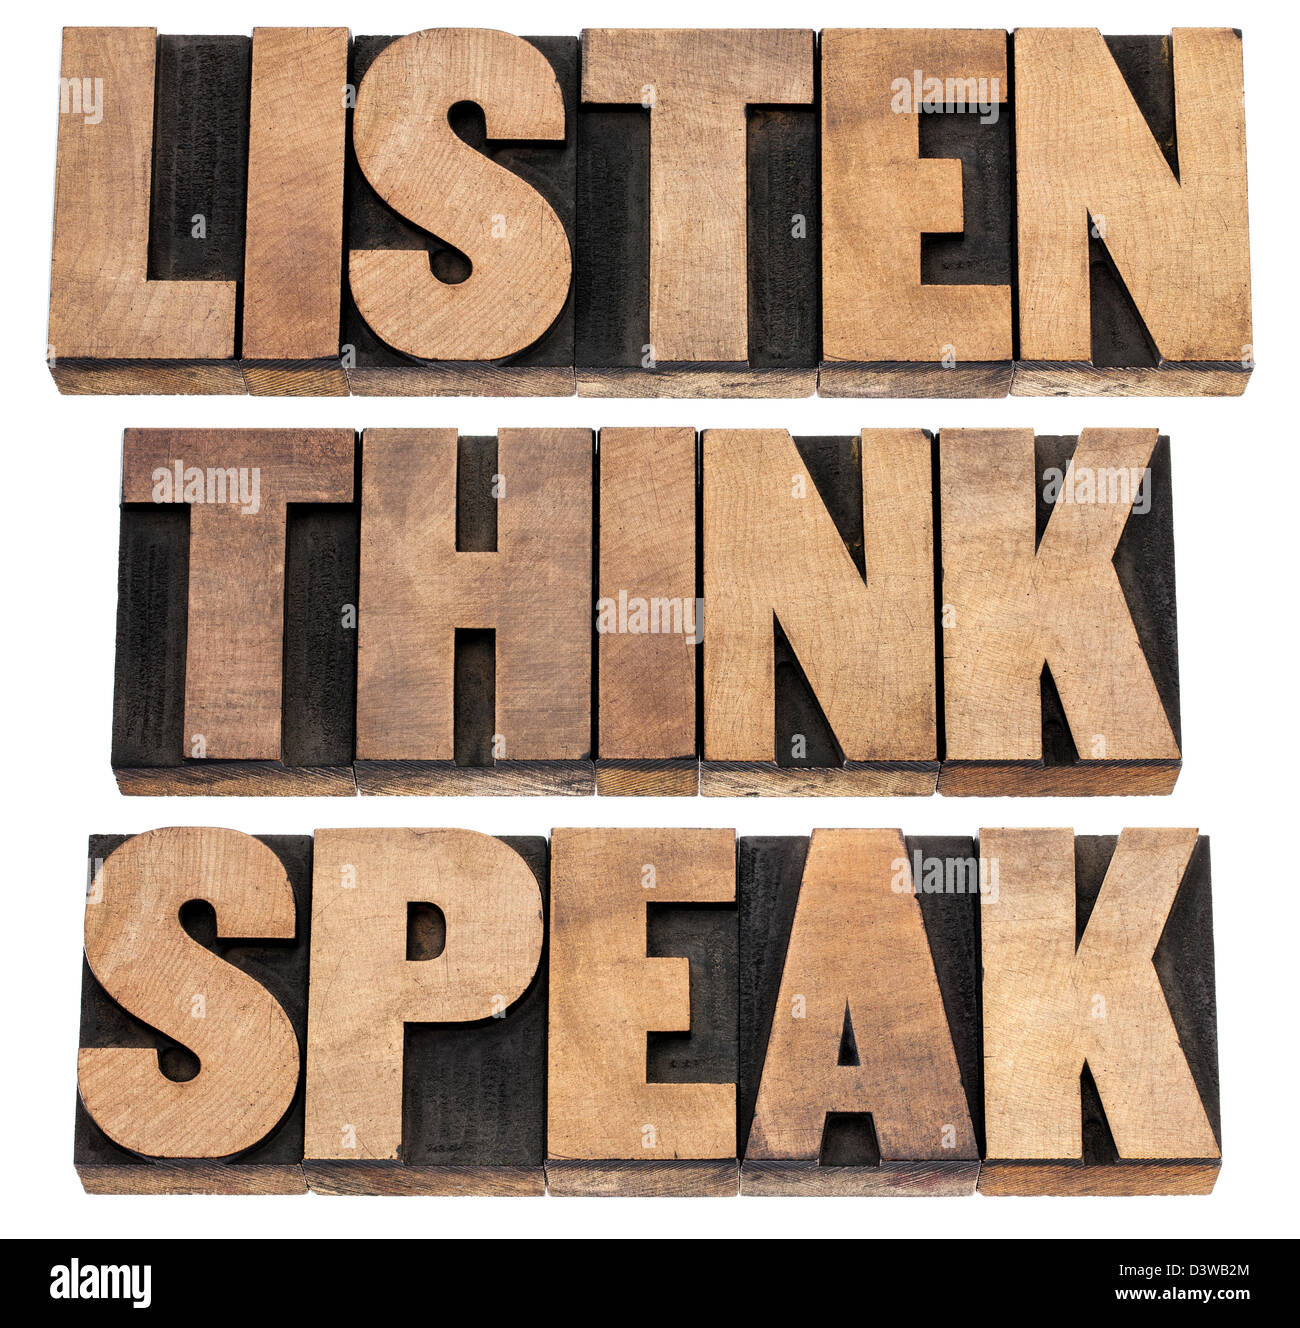 Écouter, réfléchir, parler - communication concept - isolé du texte dans la typographie vintage type de blocs d'impression Banque D'Images